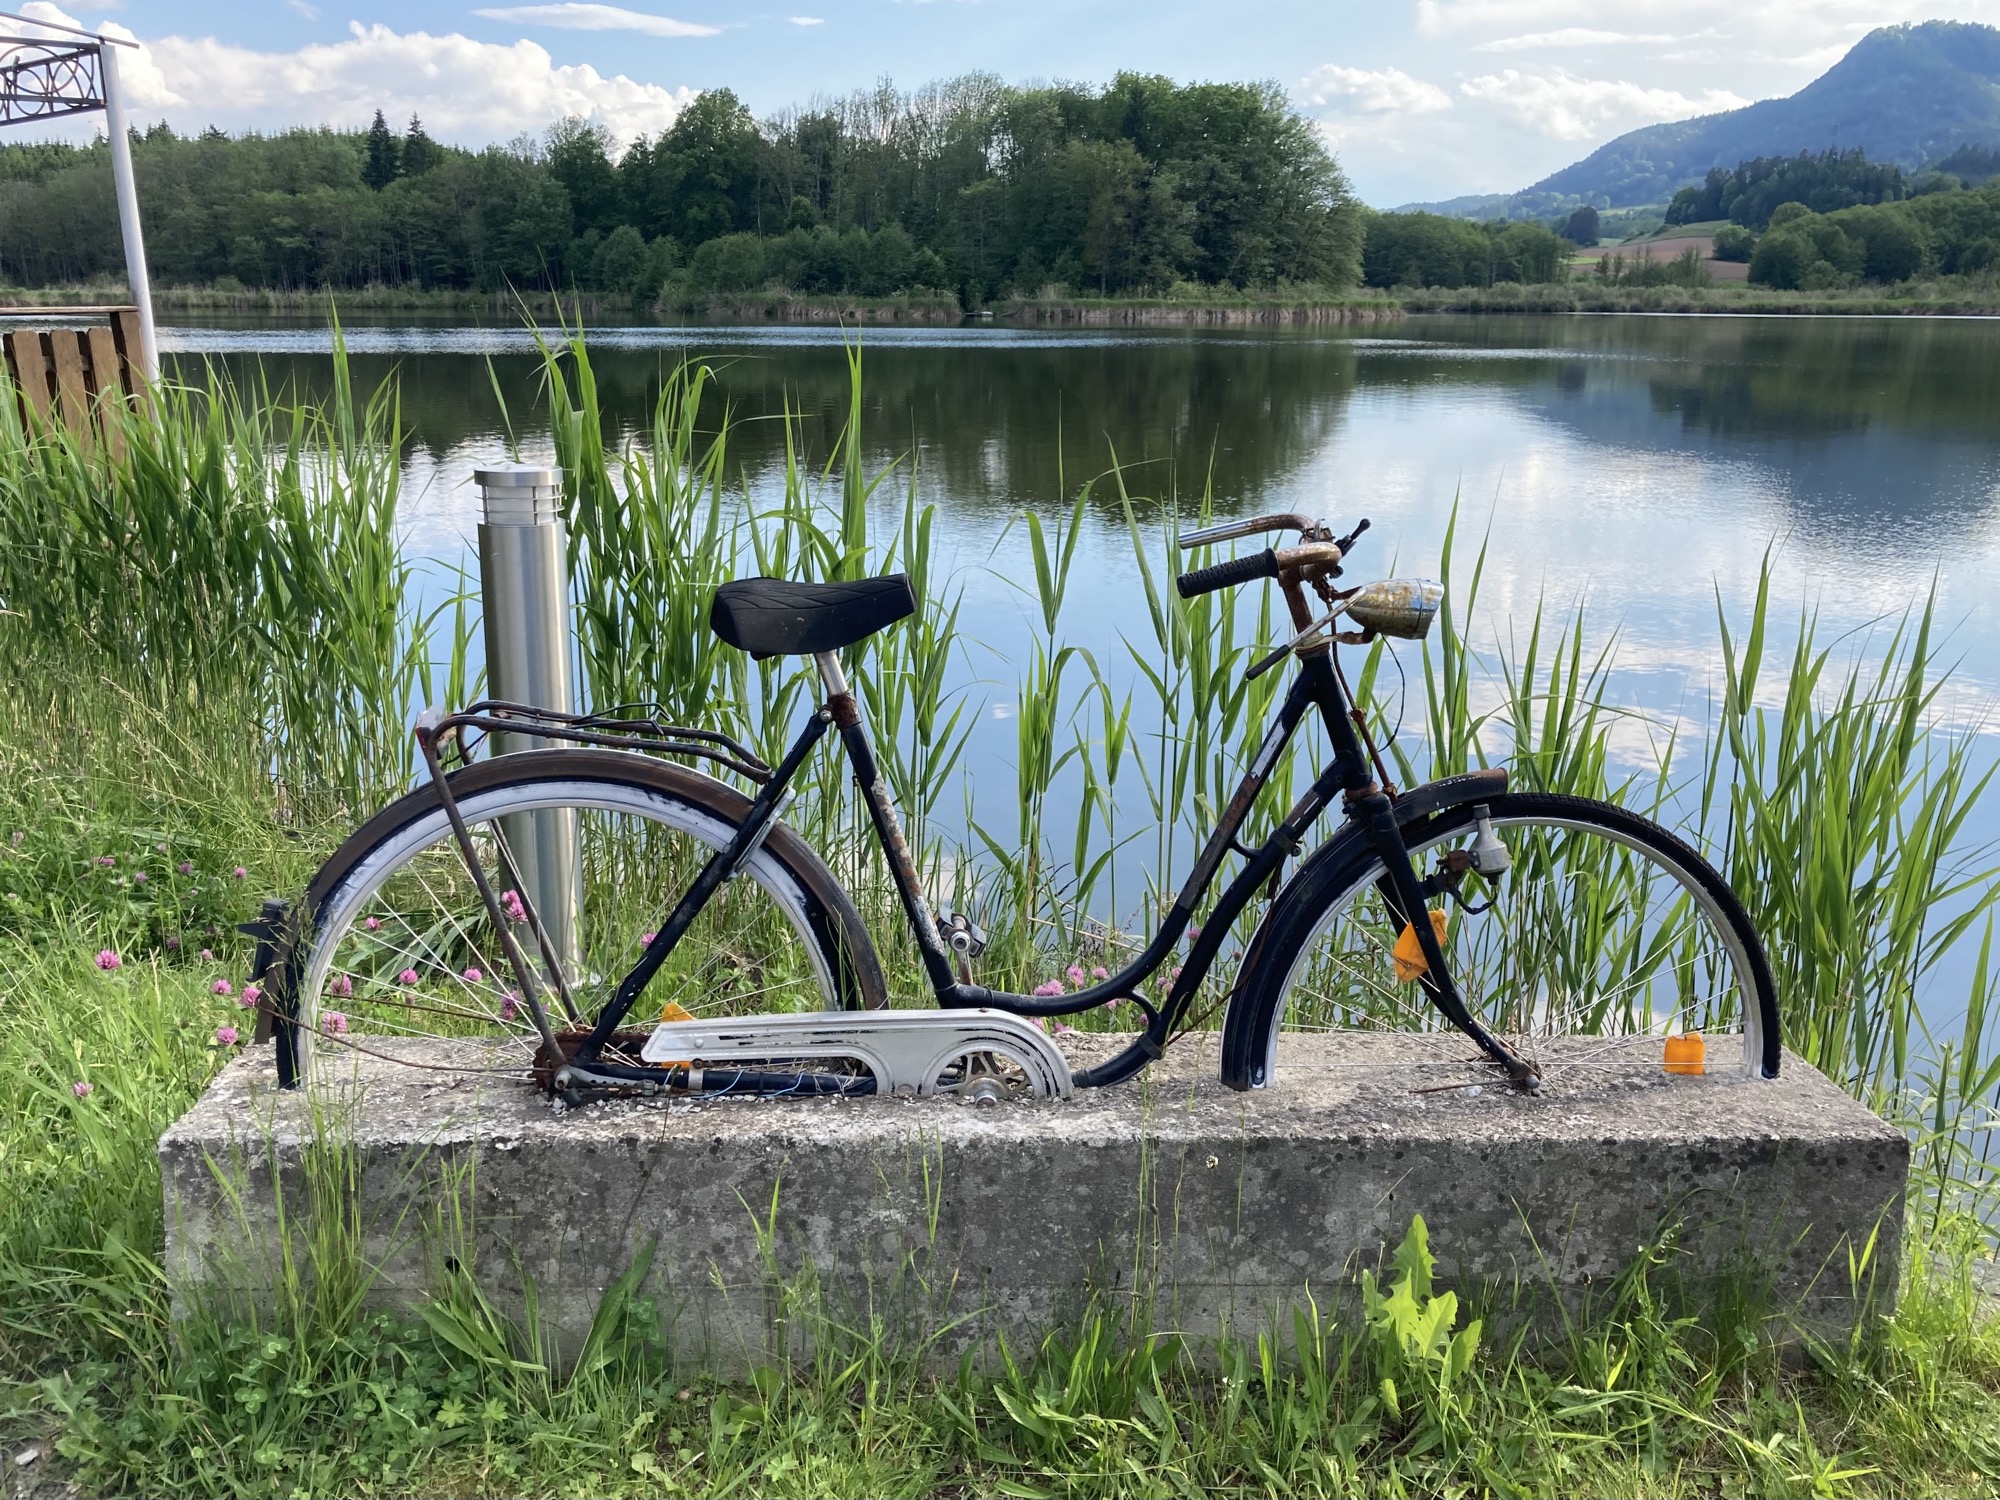 Kunst am Hörzendorfer See, ein altes Fahrrad, das bis zur Mitte der Reifen in einem Betonblock eingelassen ist